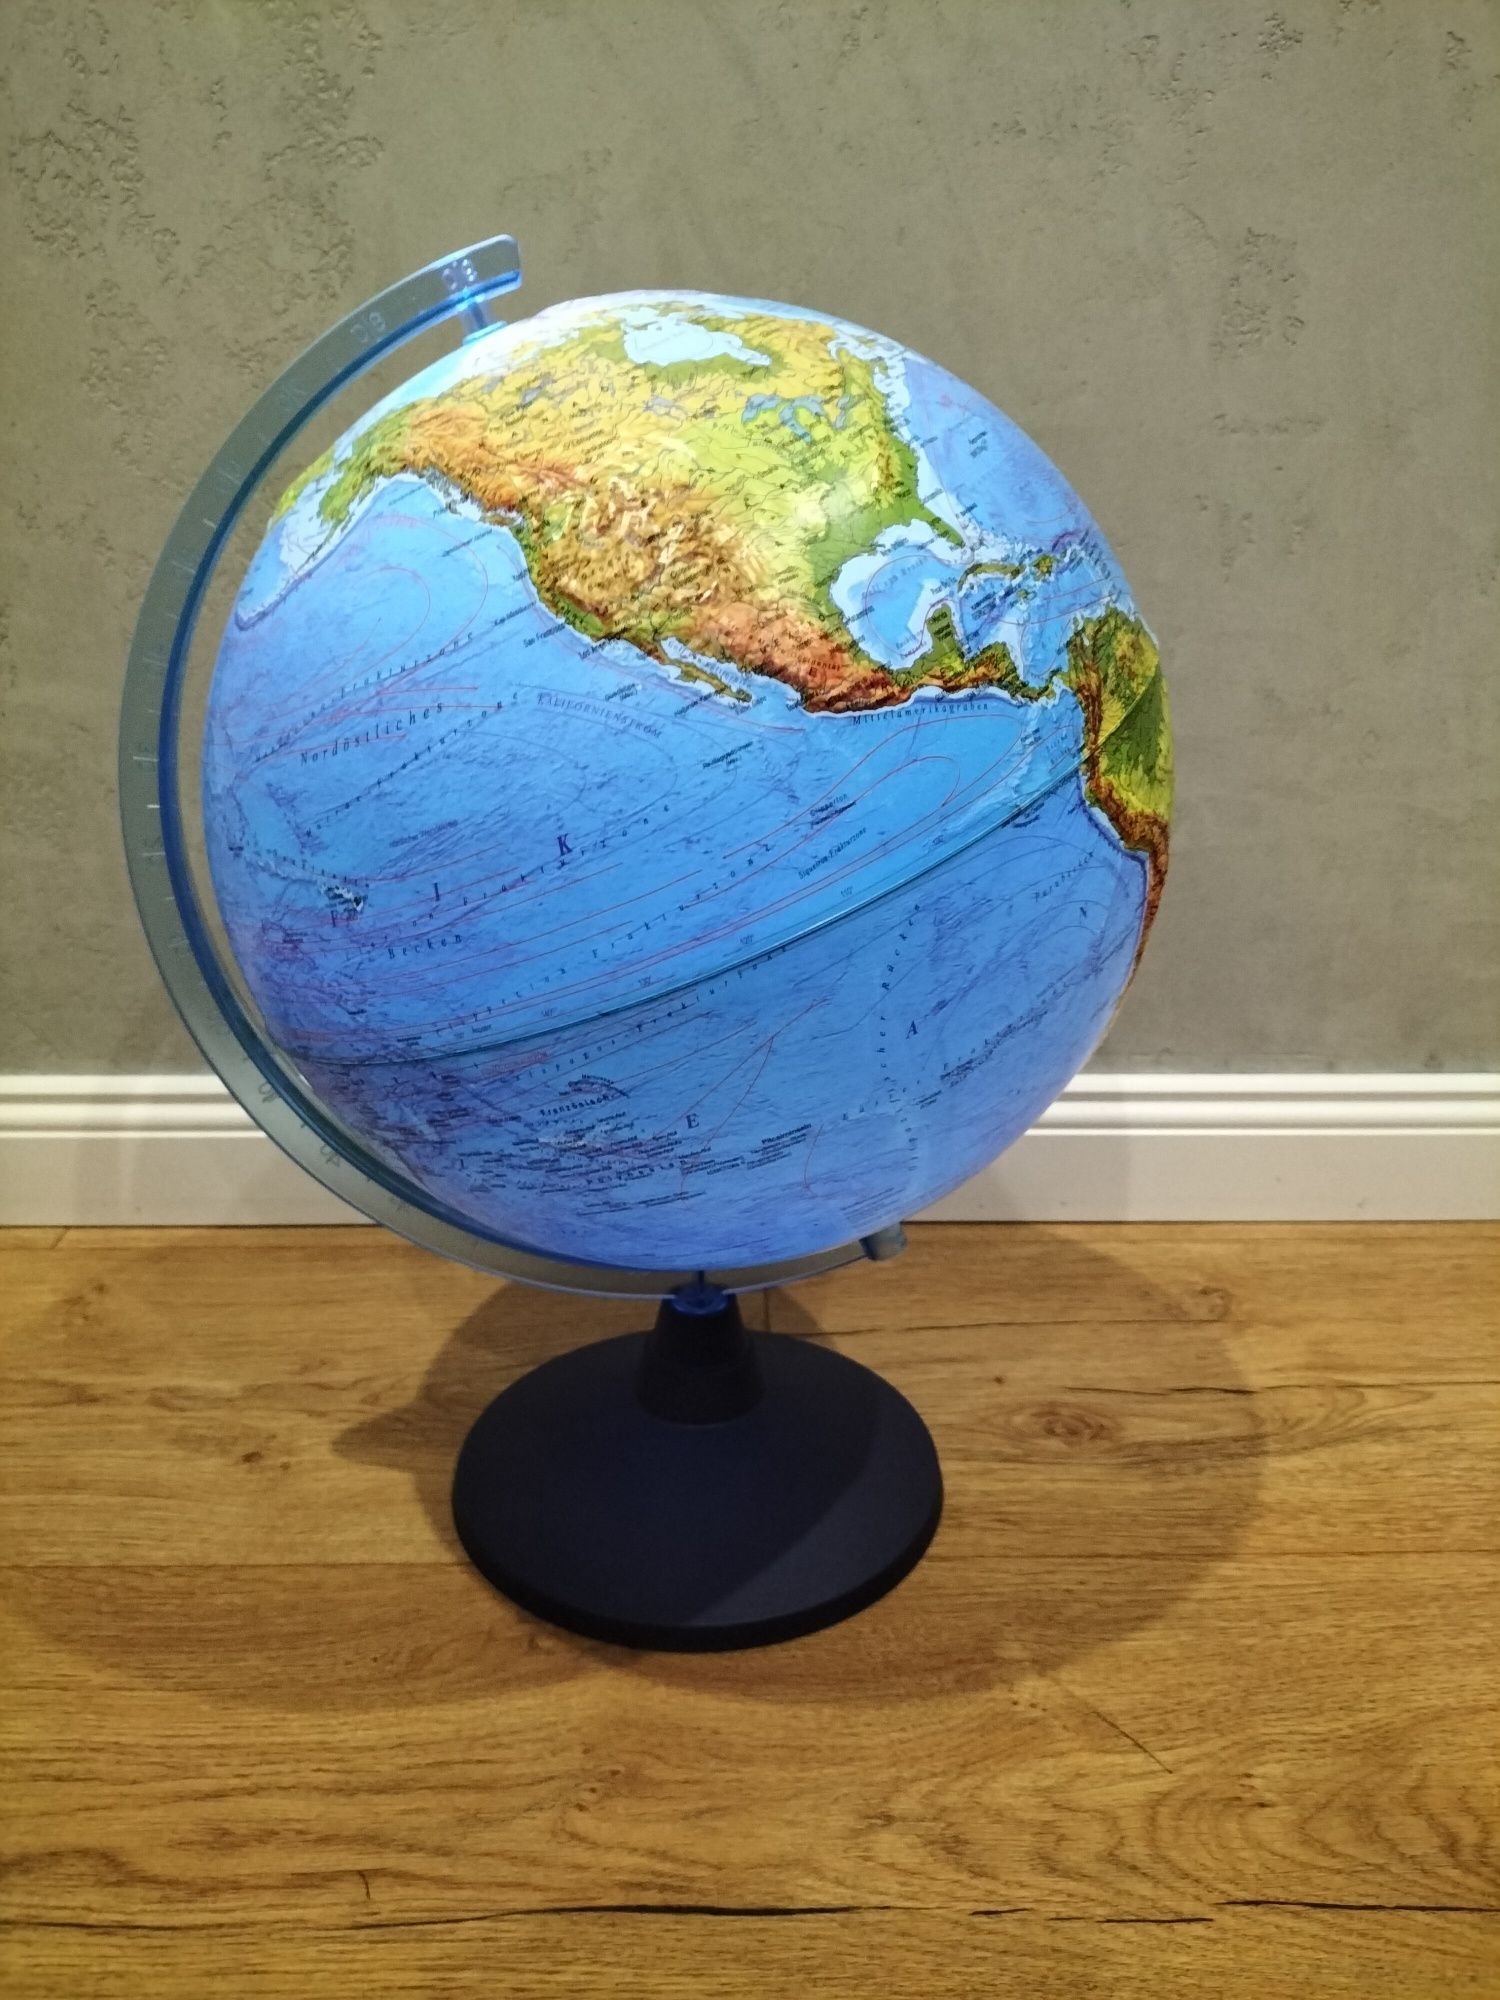 Globus podświetlany 3D LED z aplikacją wersja niemiecka